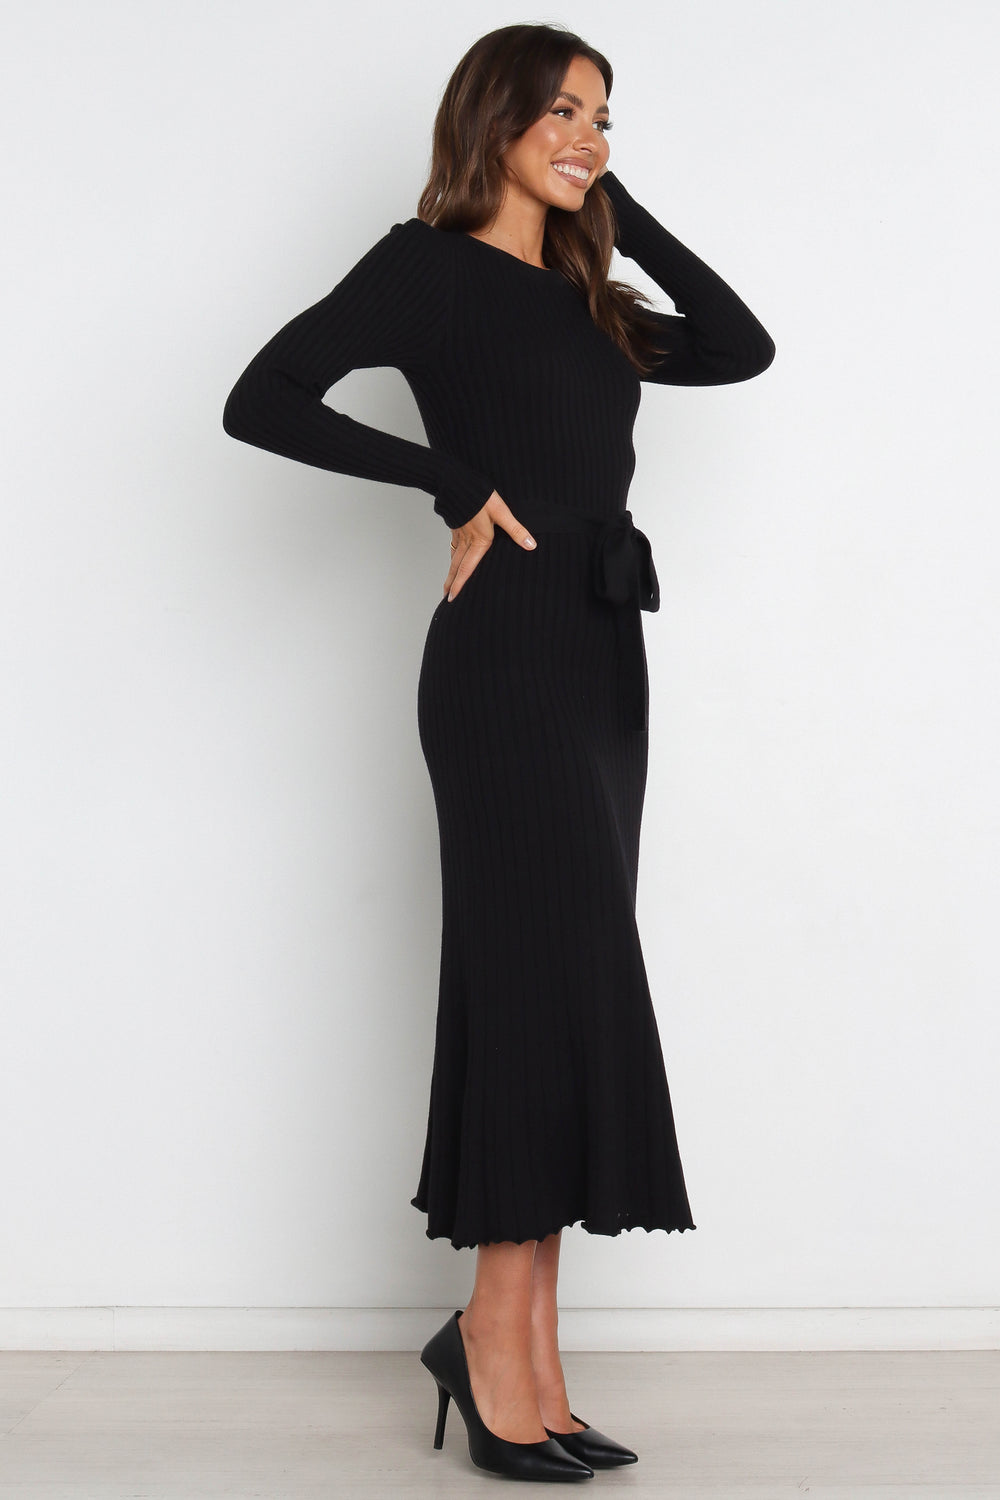 DRESSES @Rhianna Dress - Black